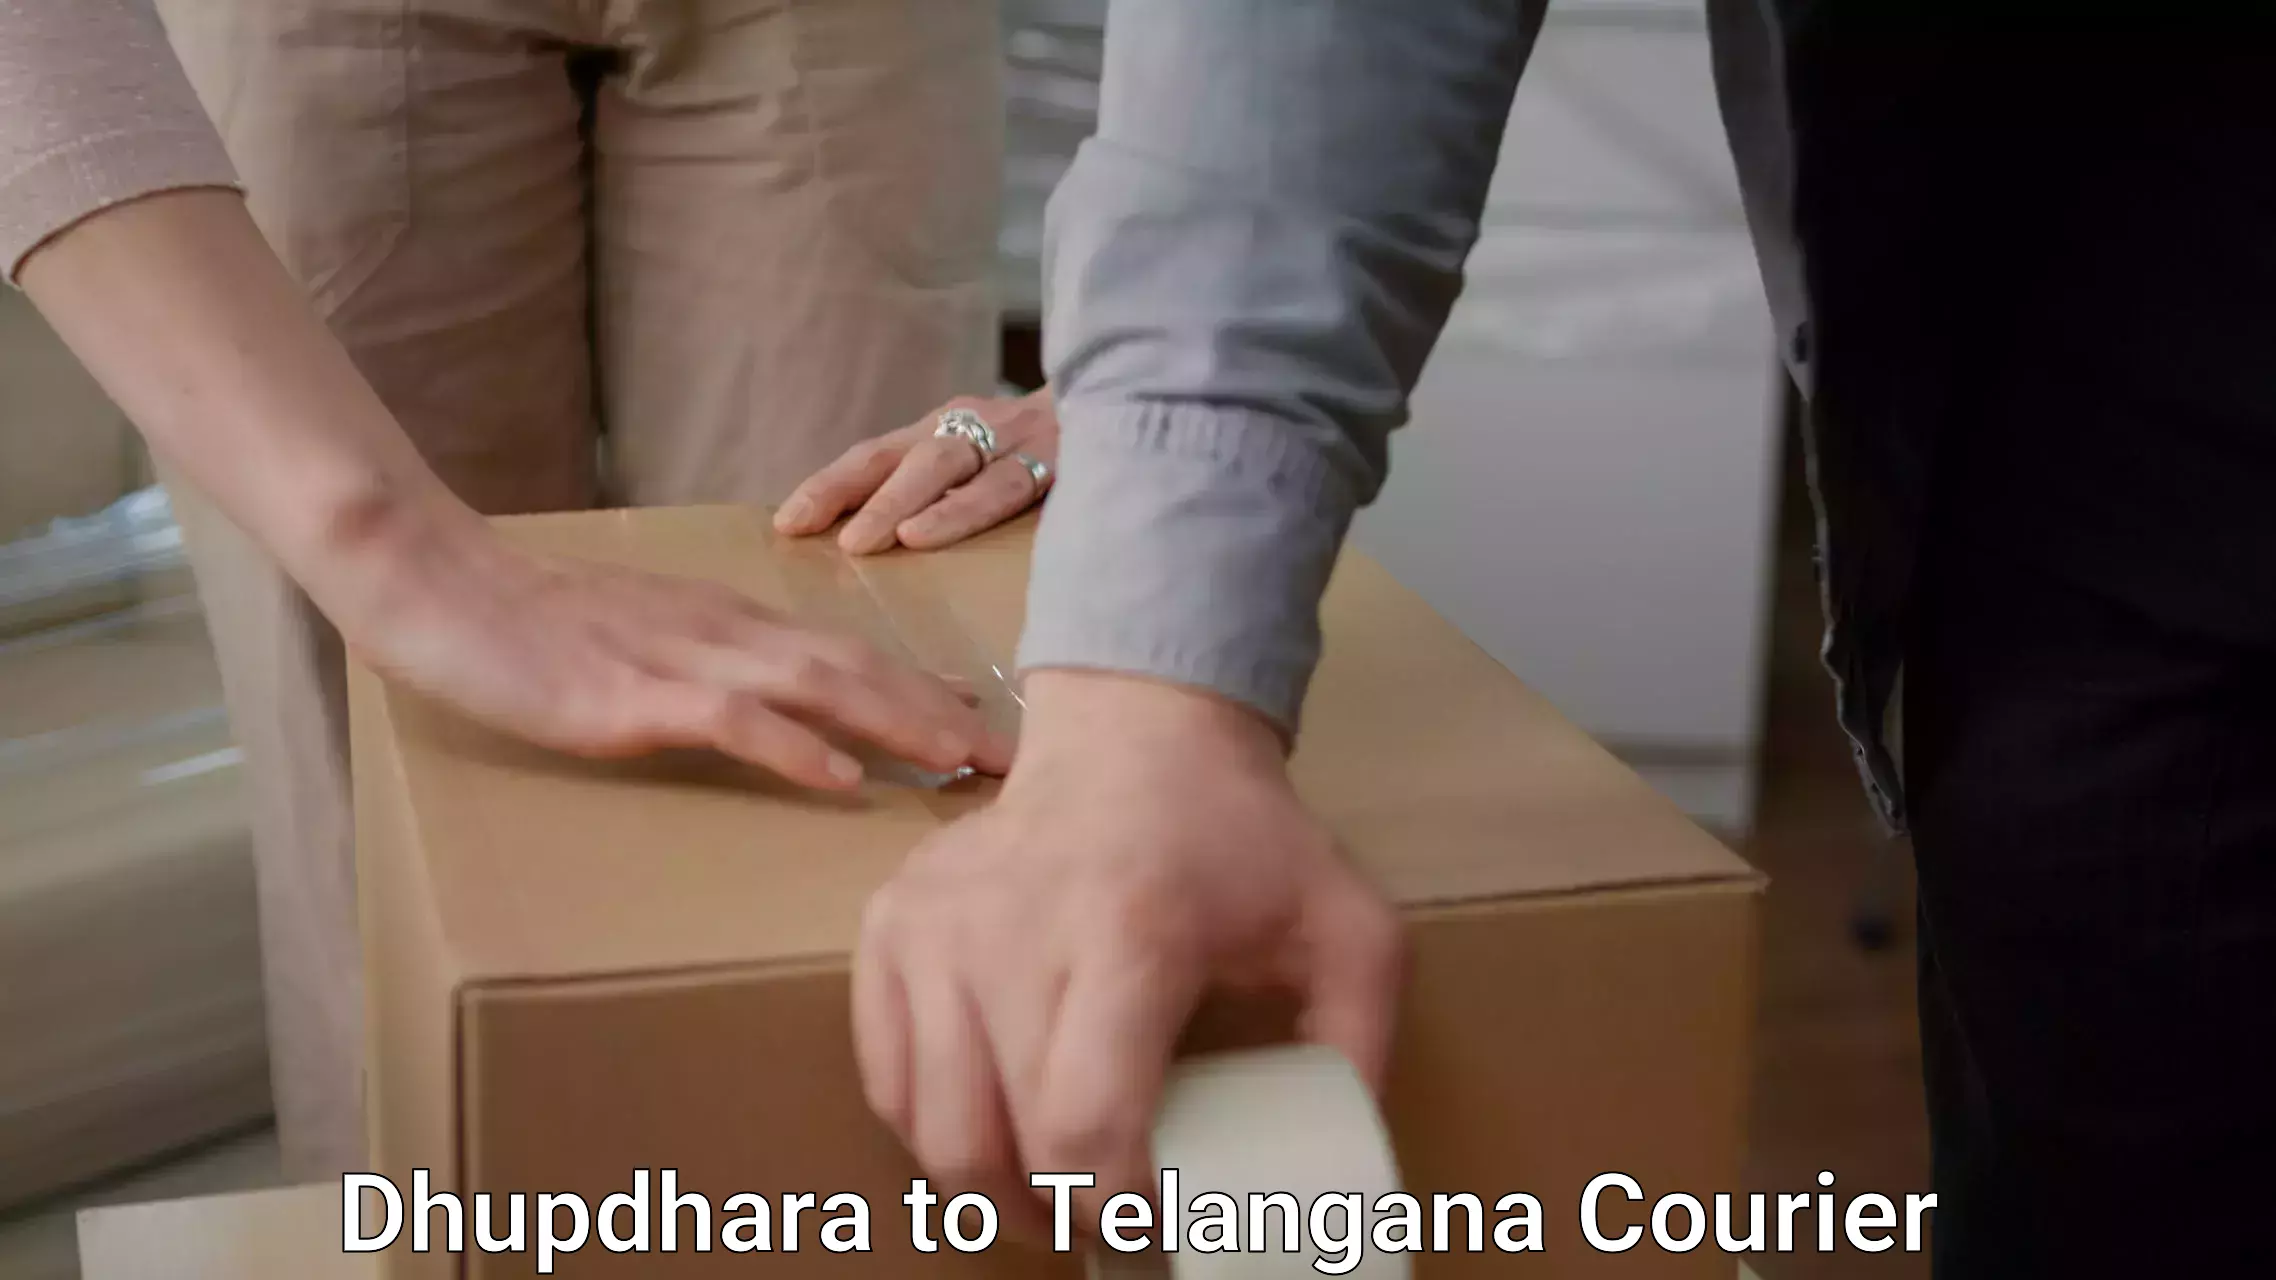 Safe moving services Dhupdhara to Telangana